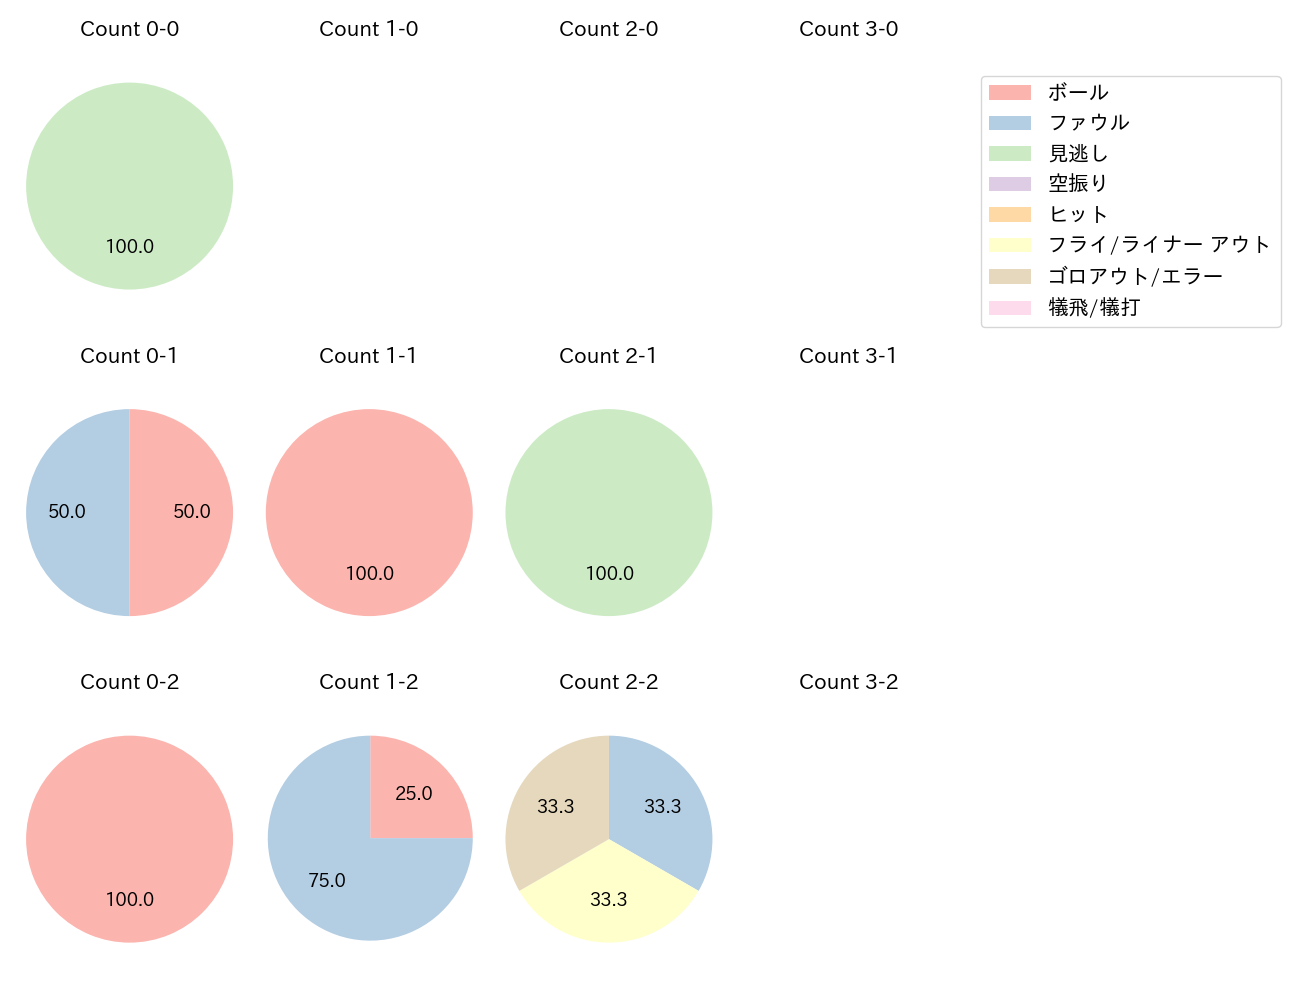 平良 拳太郎の球数分布(2021年3月)